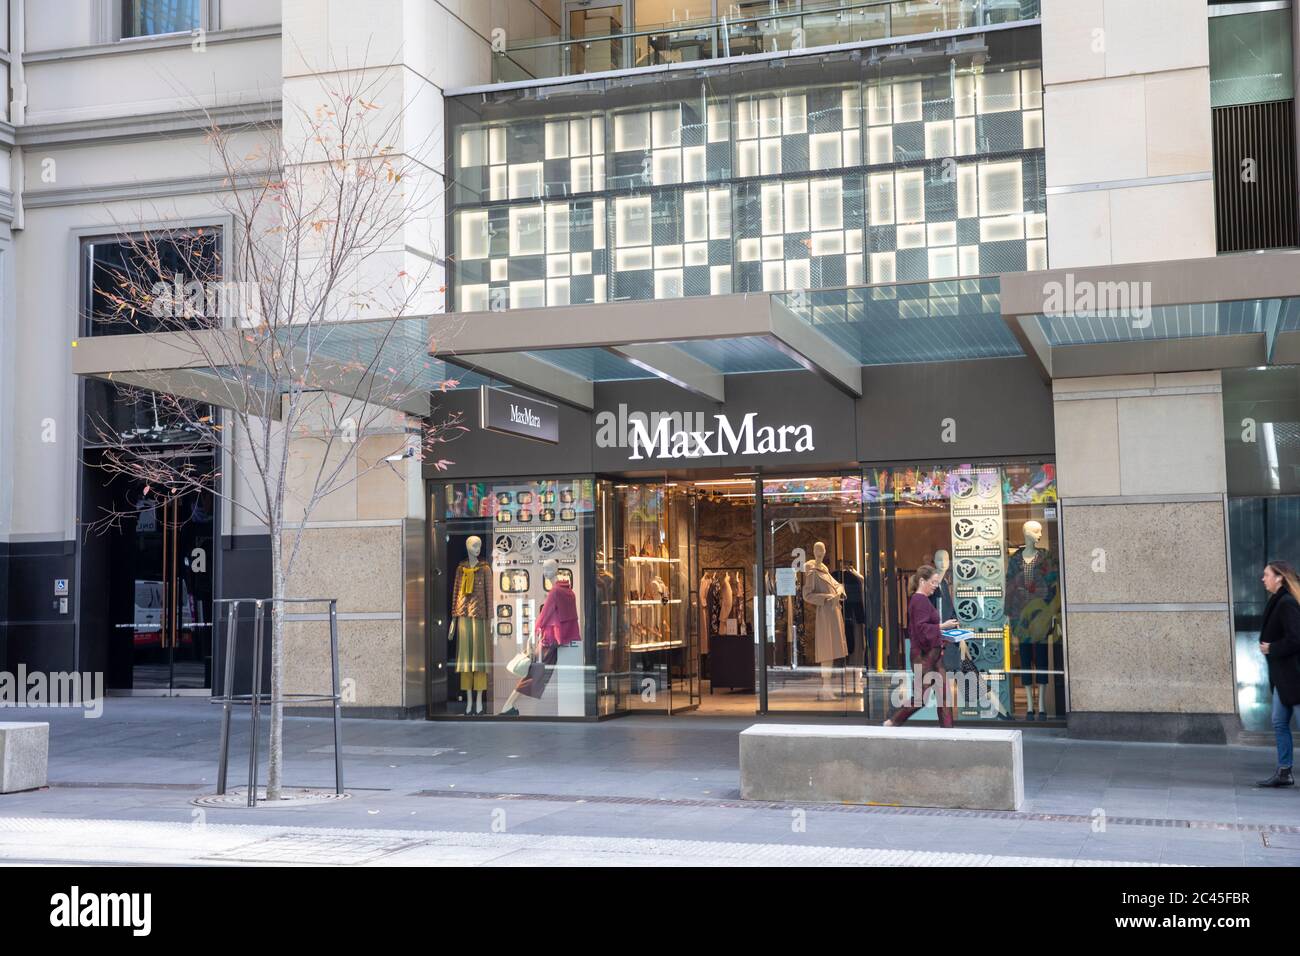 Maxmara la marque italienne de mode et leur magasin dans le centre-ville de Sydney, Nouvelle-Galles du Sud, Australie Banque D'Images